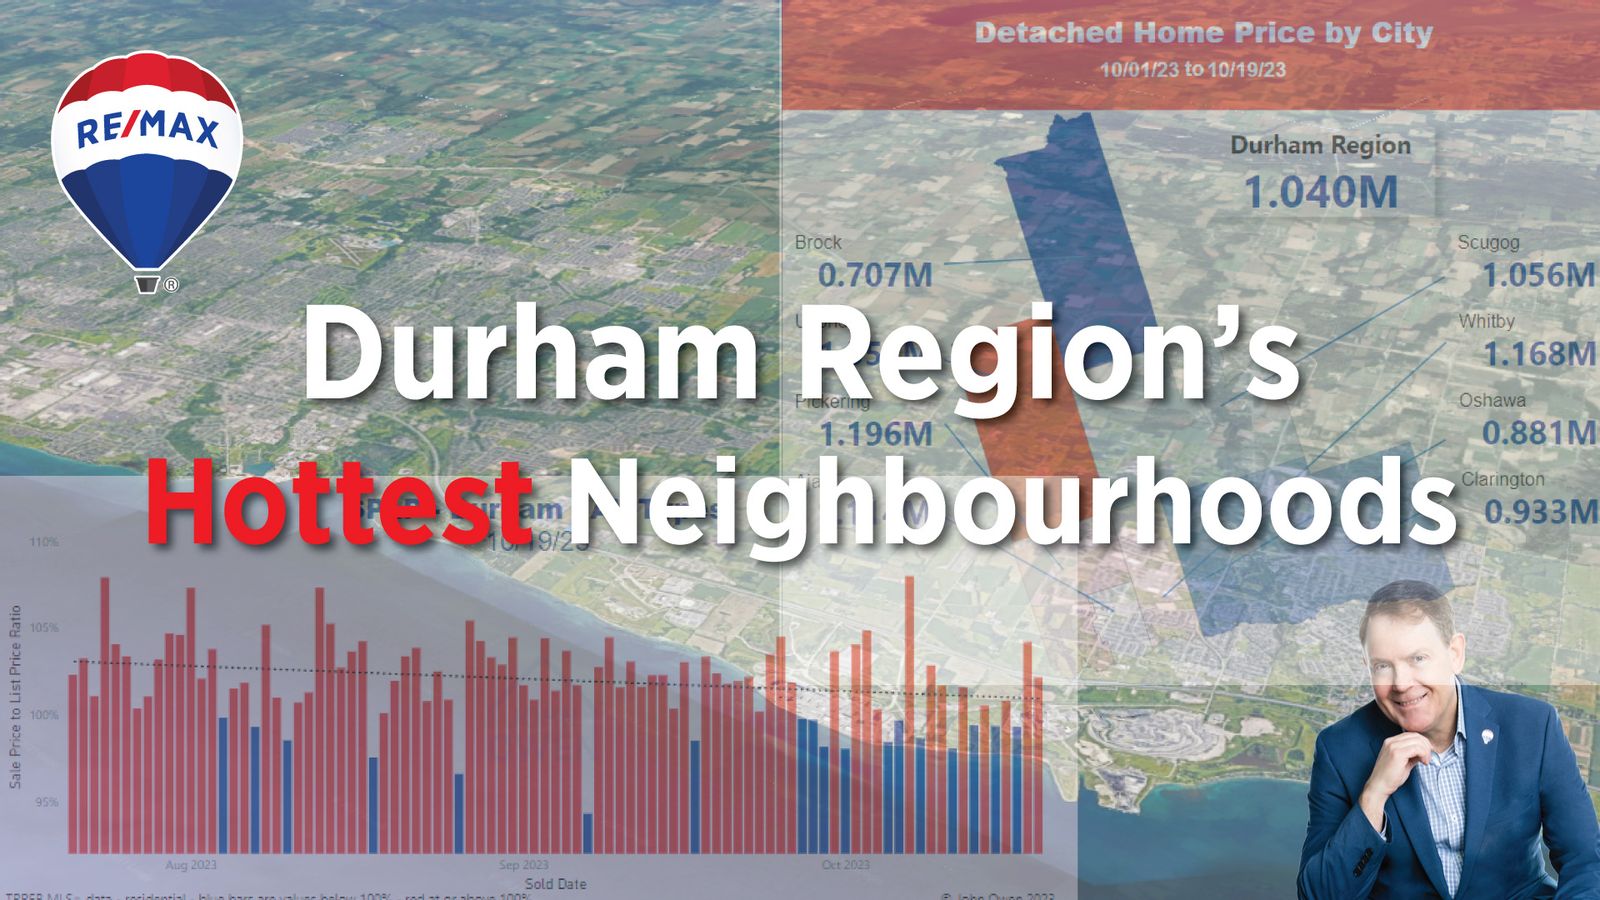 The Hottest Neighbourhoods in Durham Region Real Estate